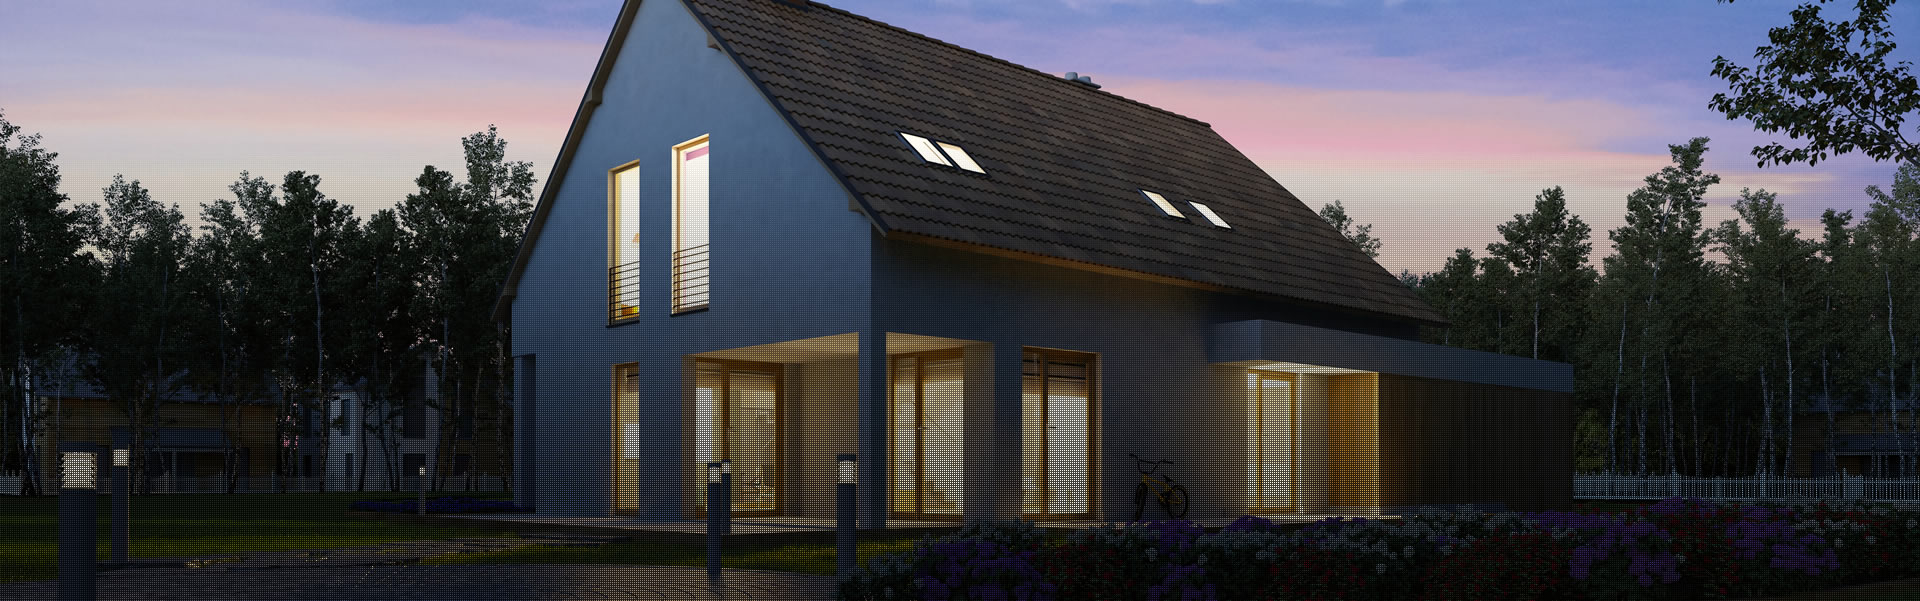 Lichtanlagen Planung für Wohnraum und Arbeitsplatzbeleuchtung von Lüdenscheid bis Olpe